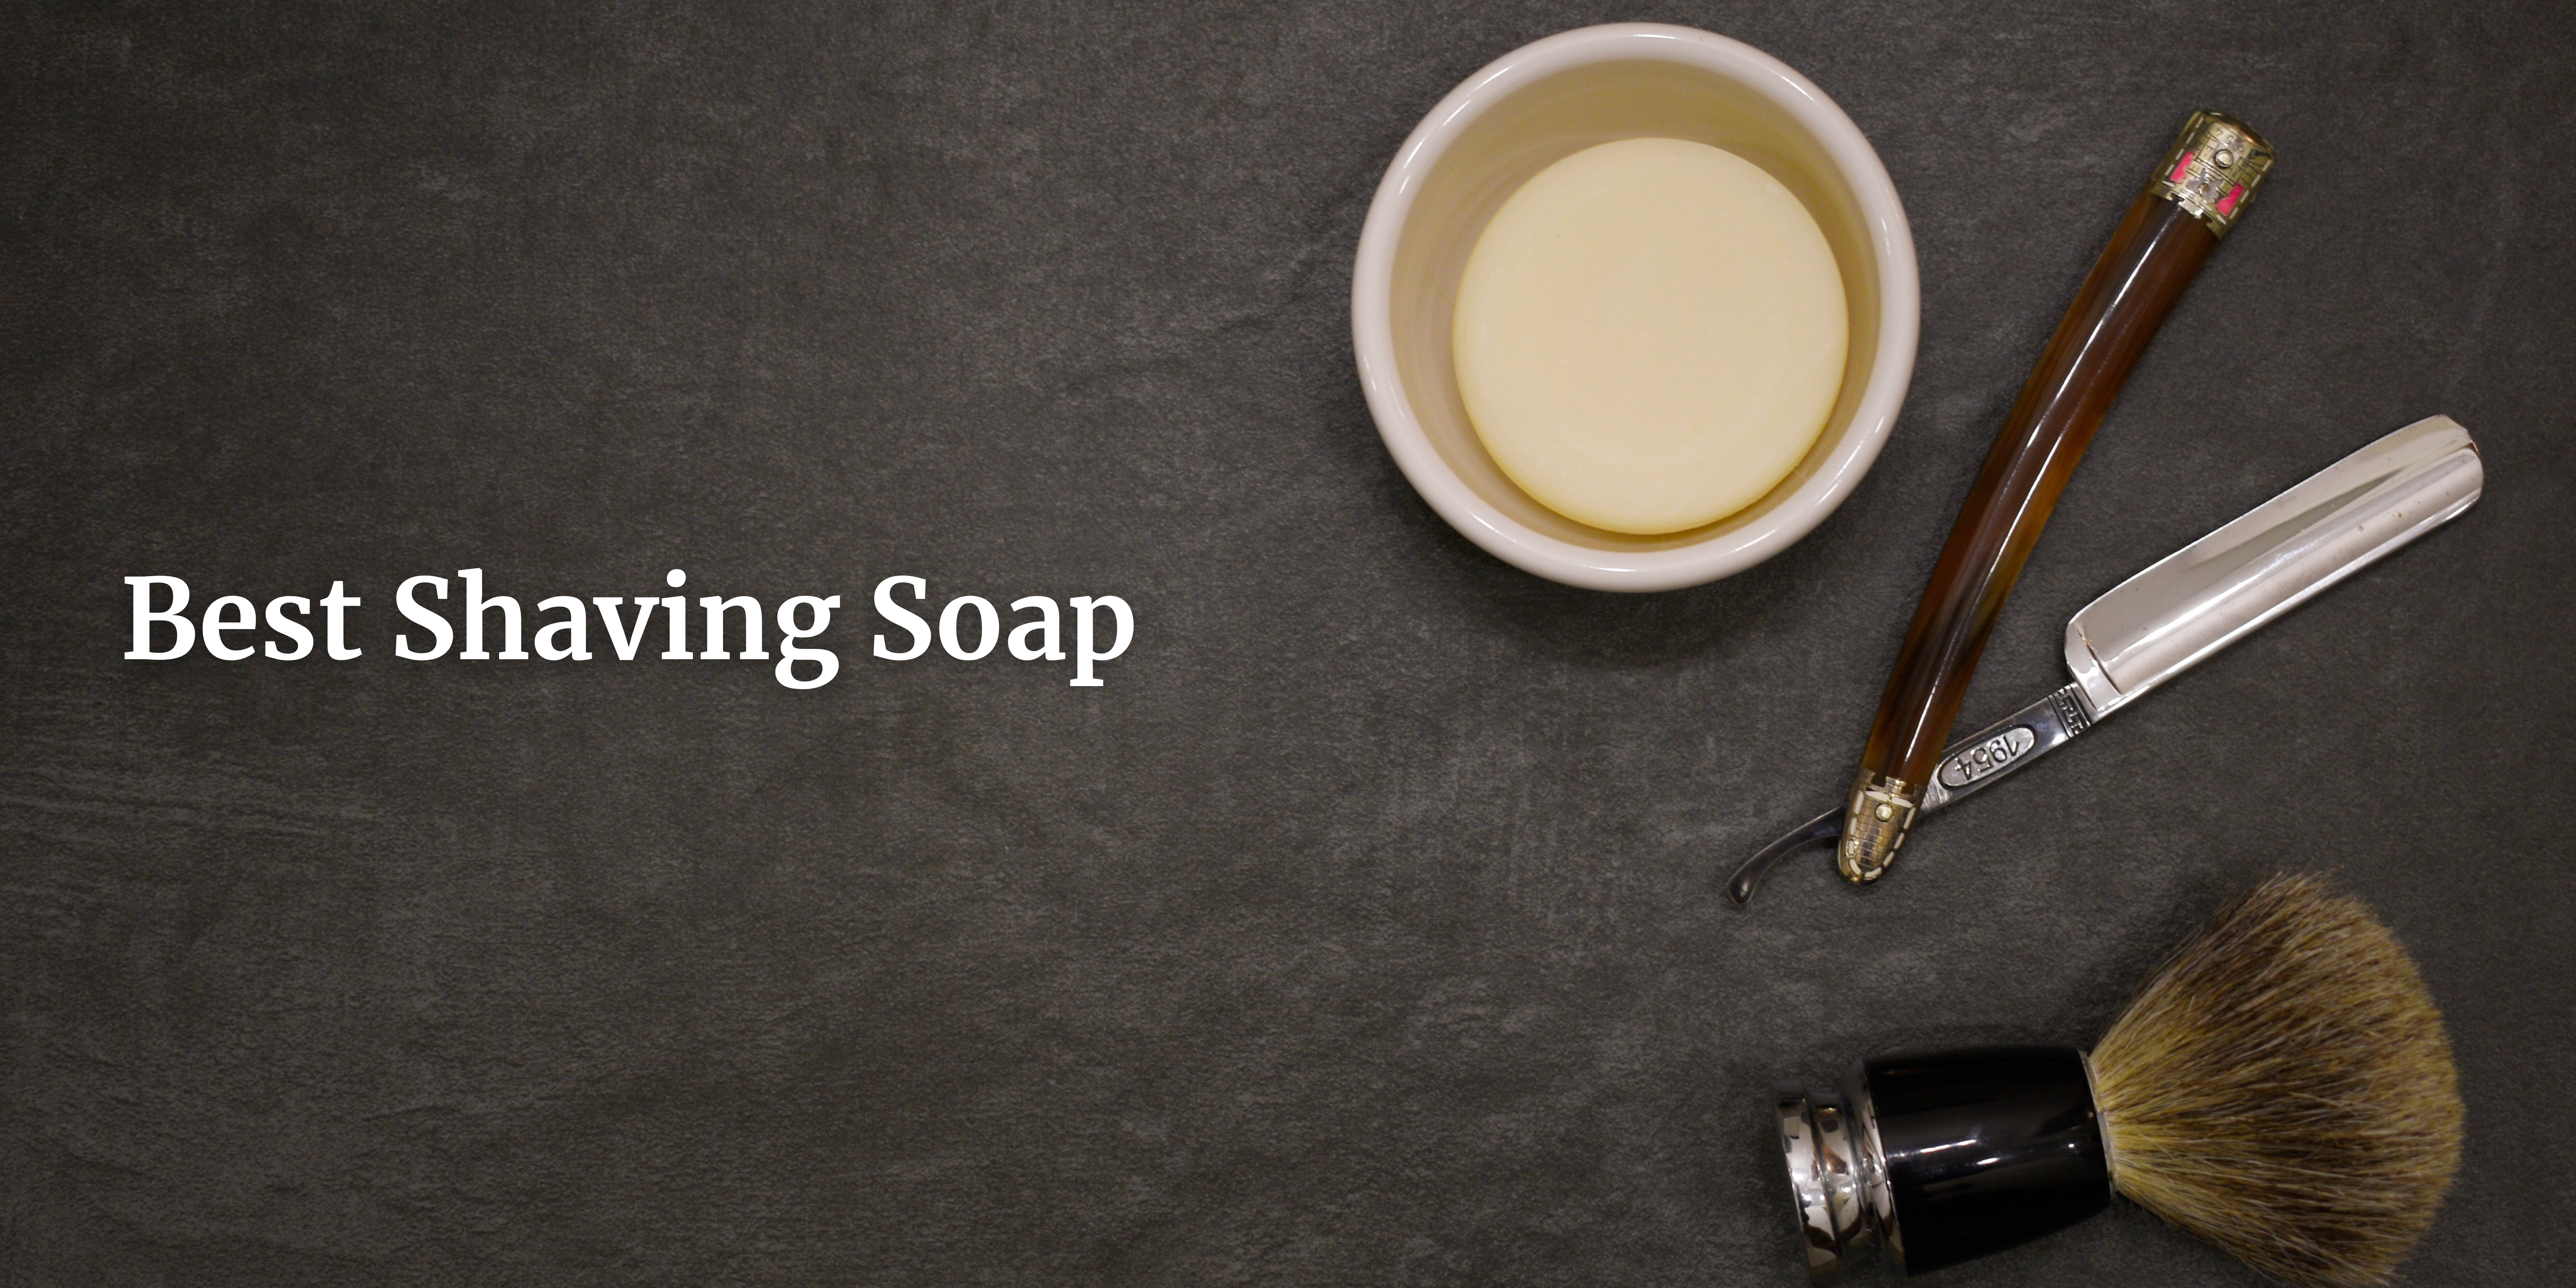 shaving soap in Japan